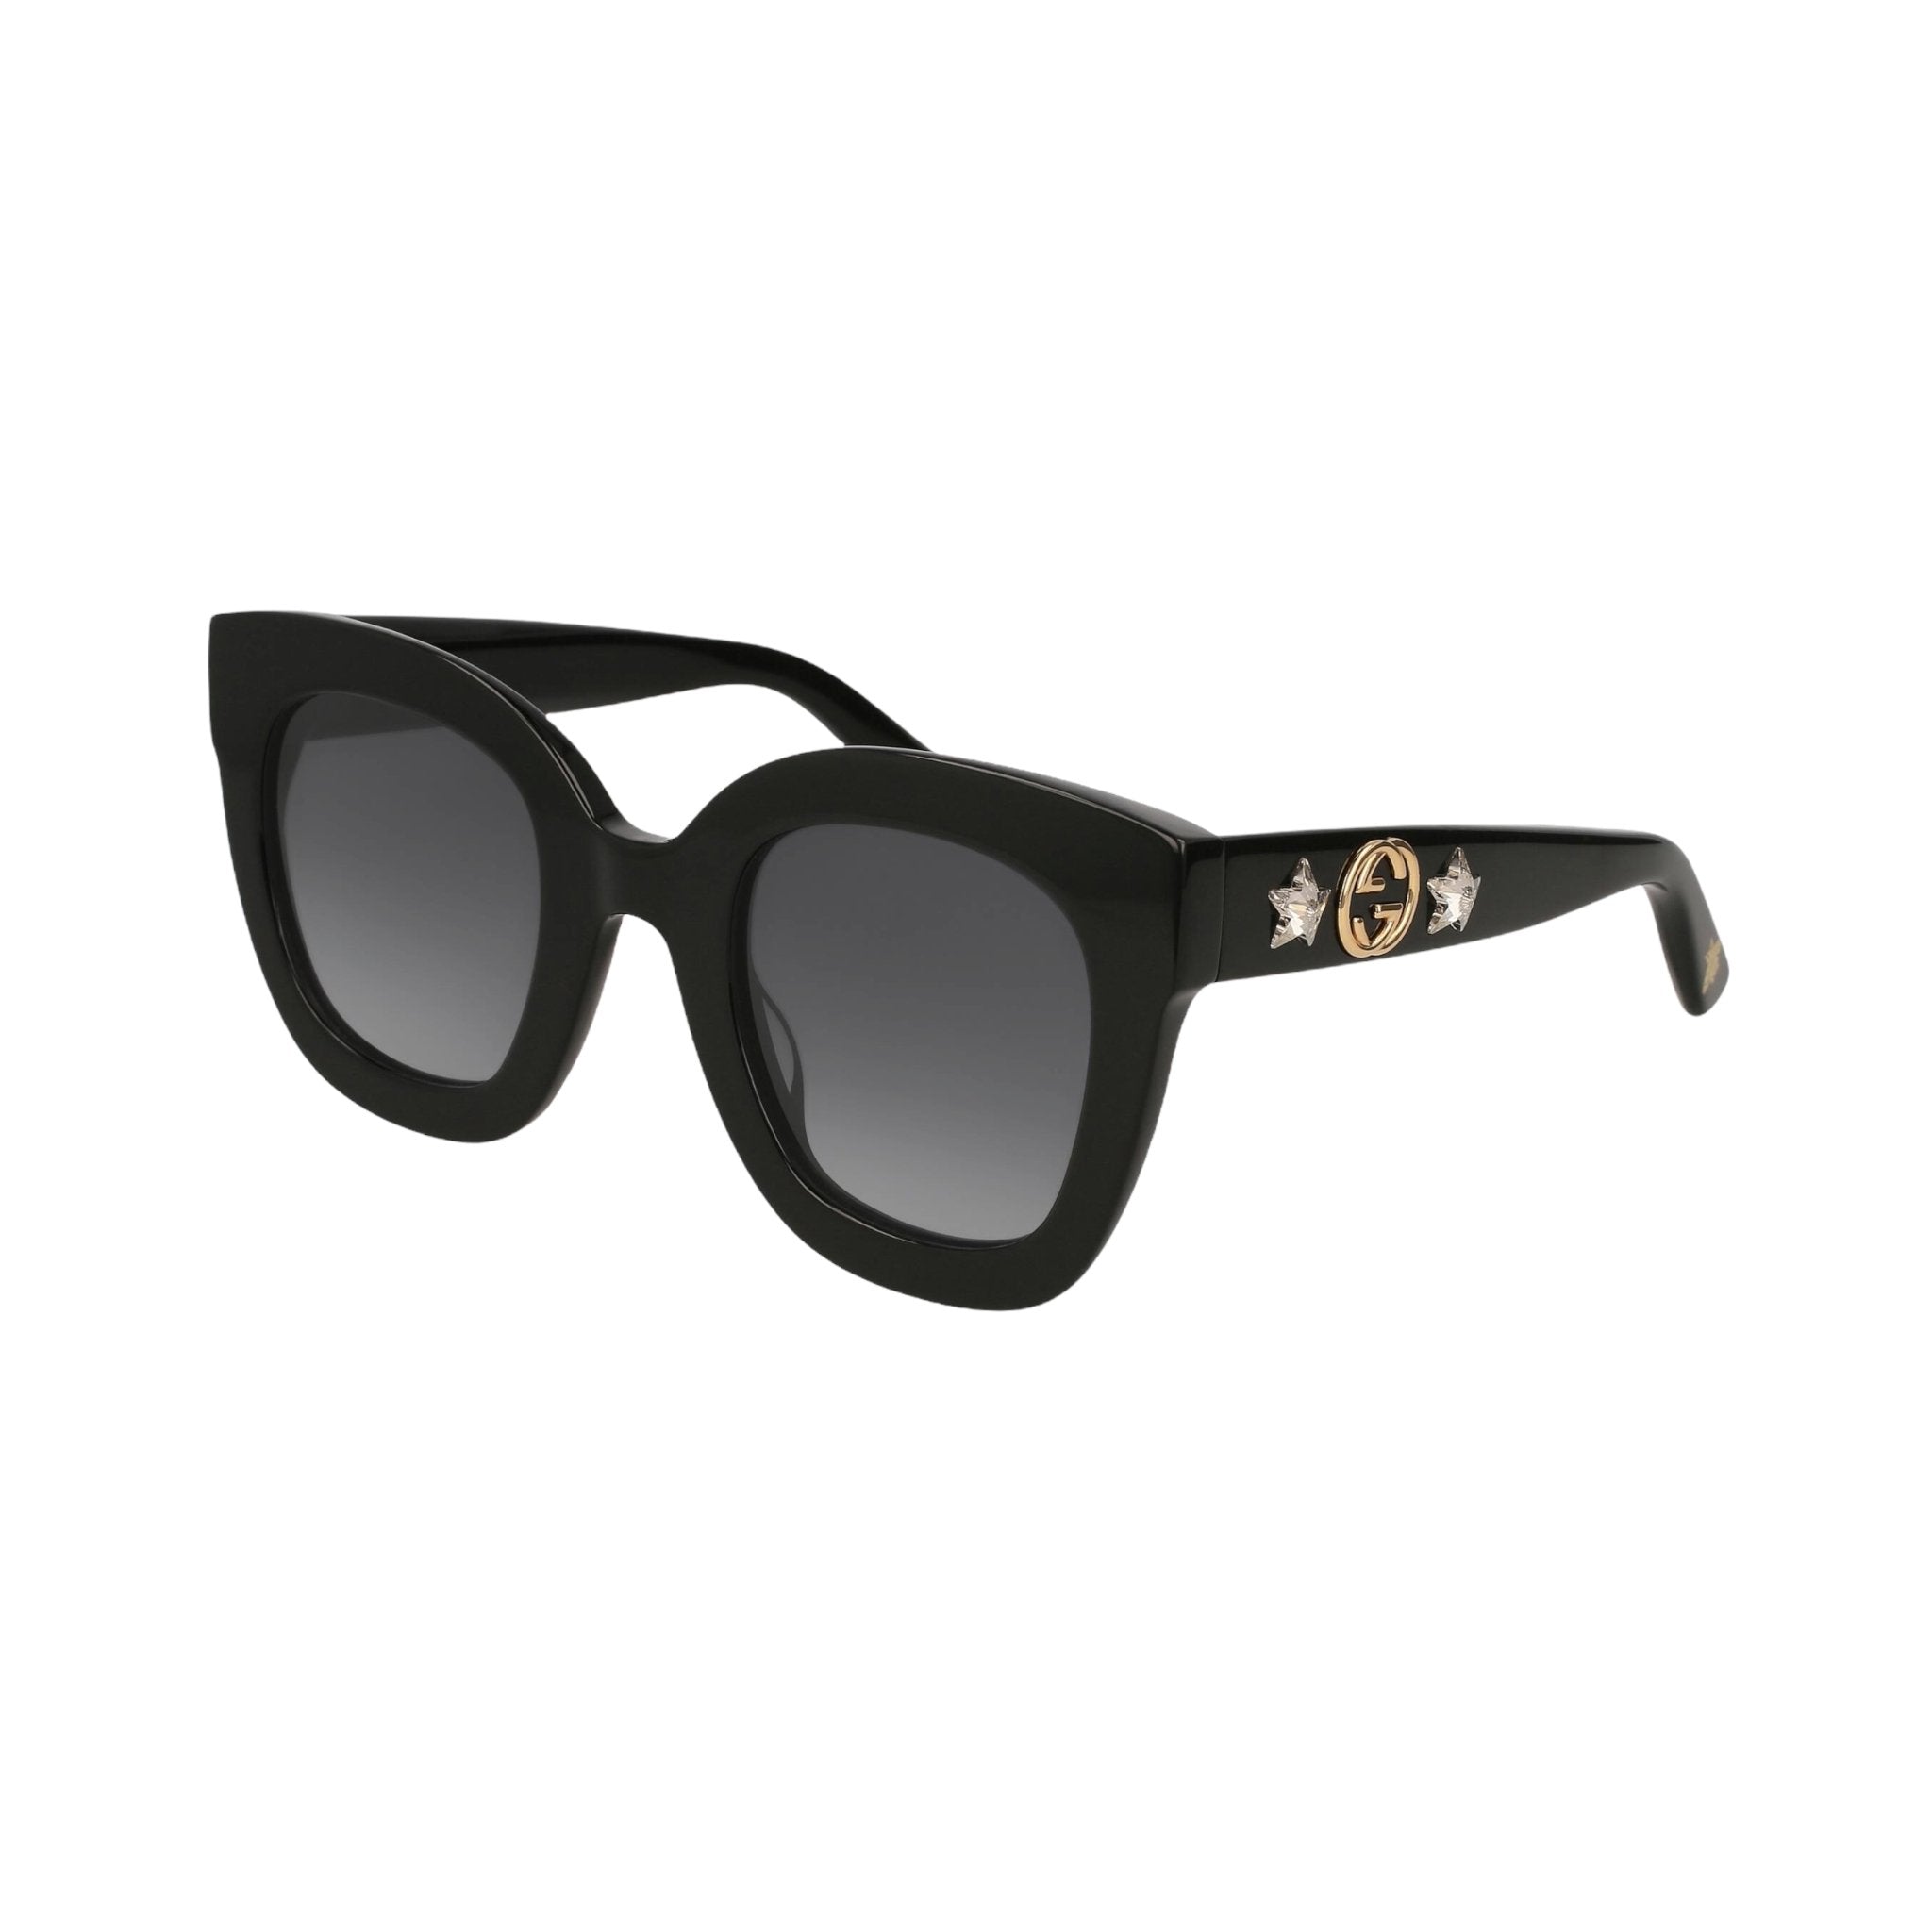 Gucci - Gucci - occhiale da sole Gucci GG0208 - Occhiale da sole - Ottica Azzurro Capri